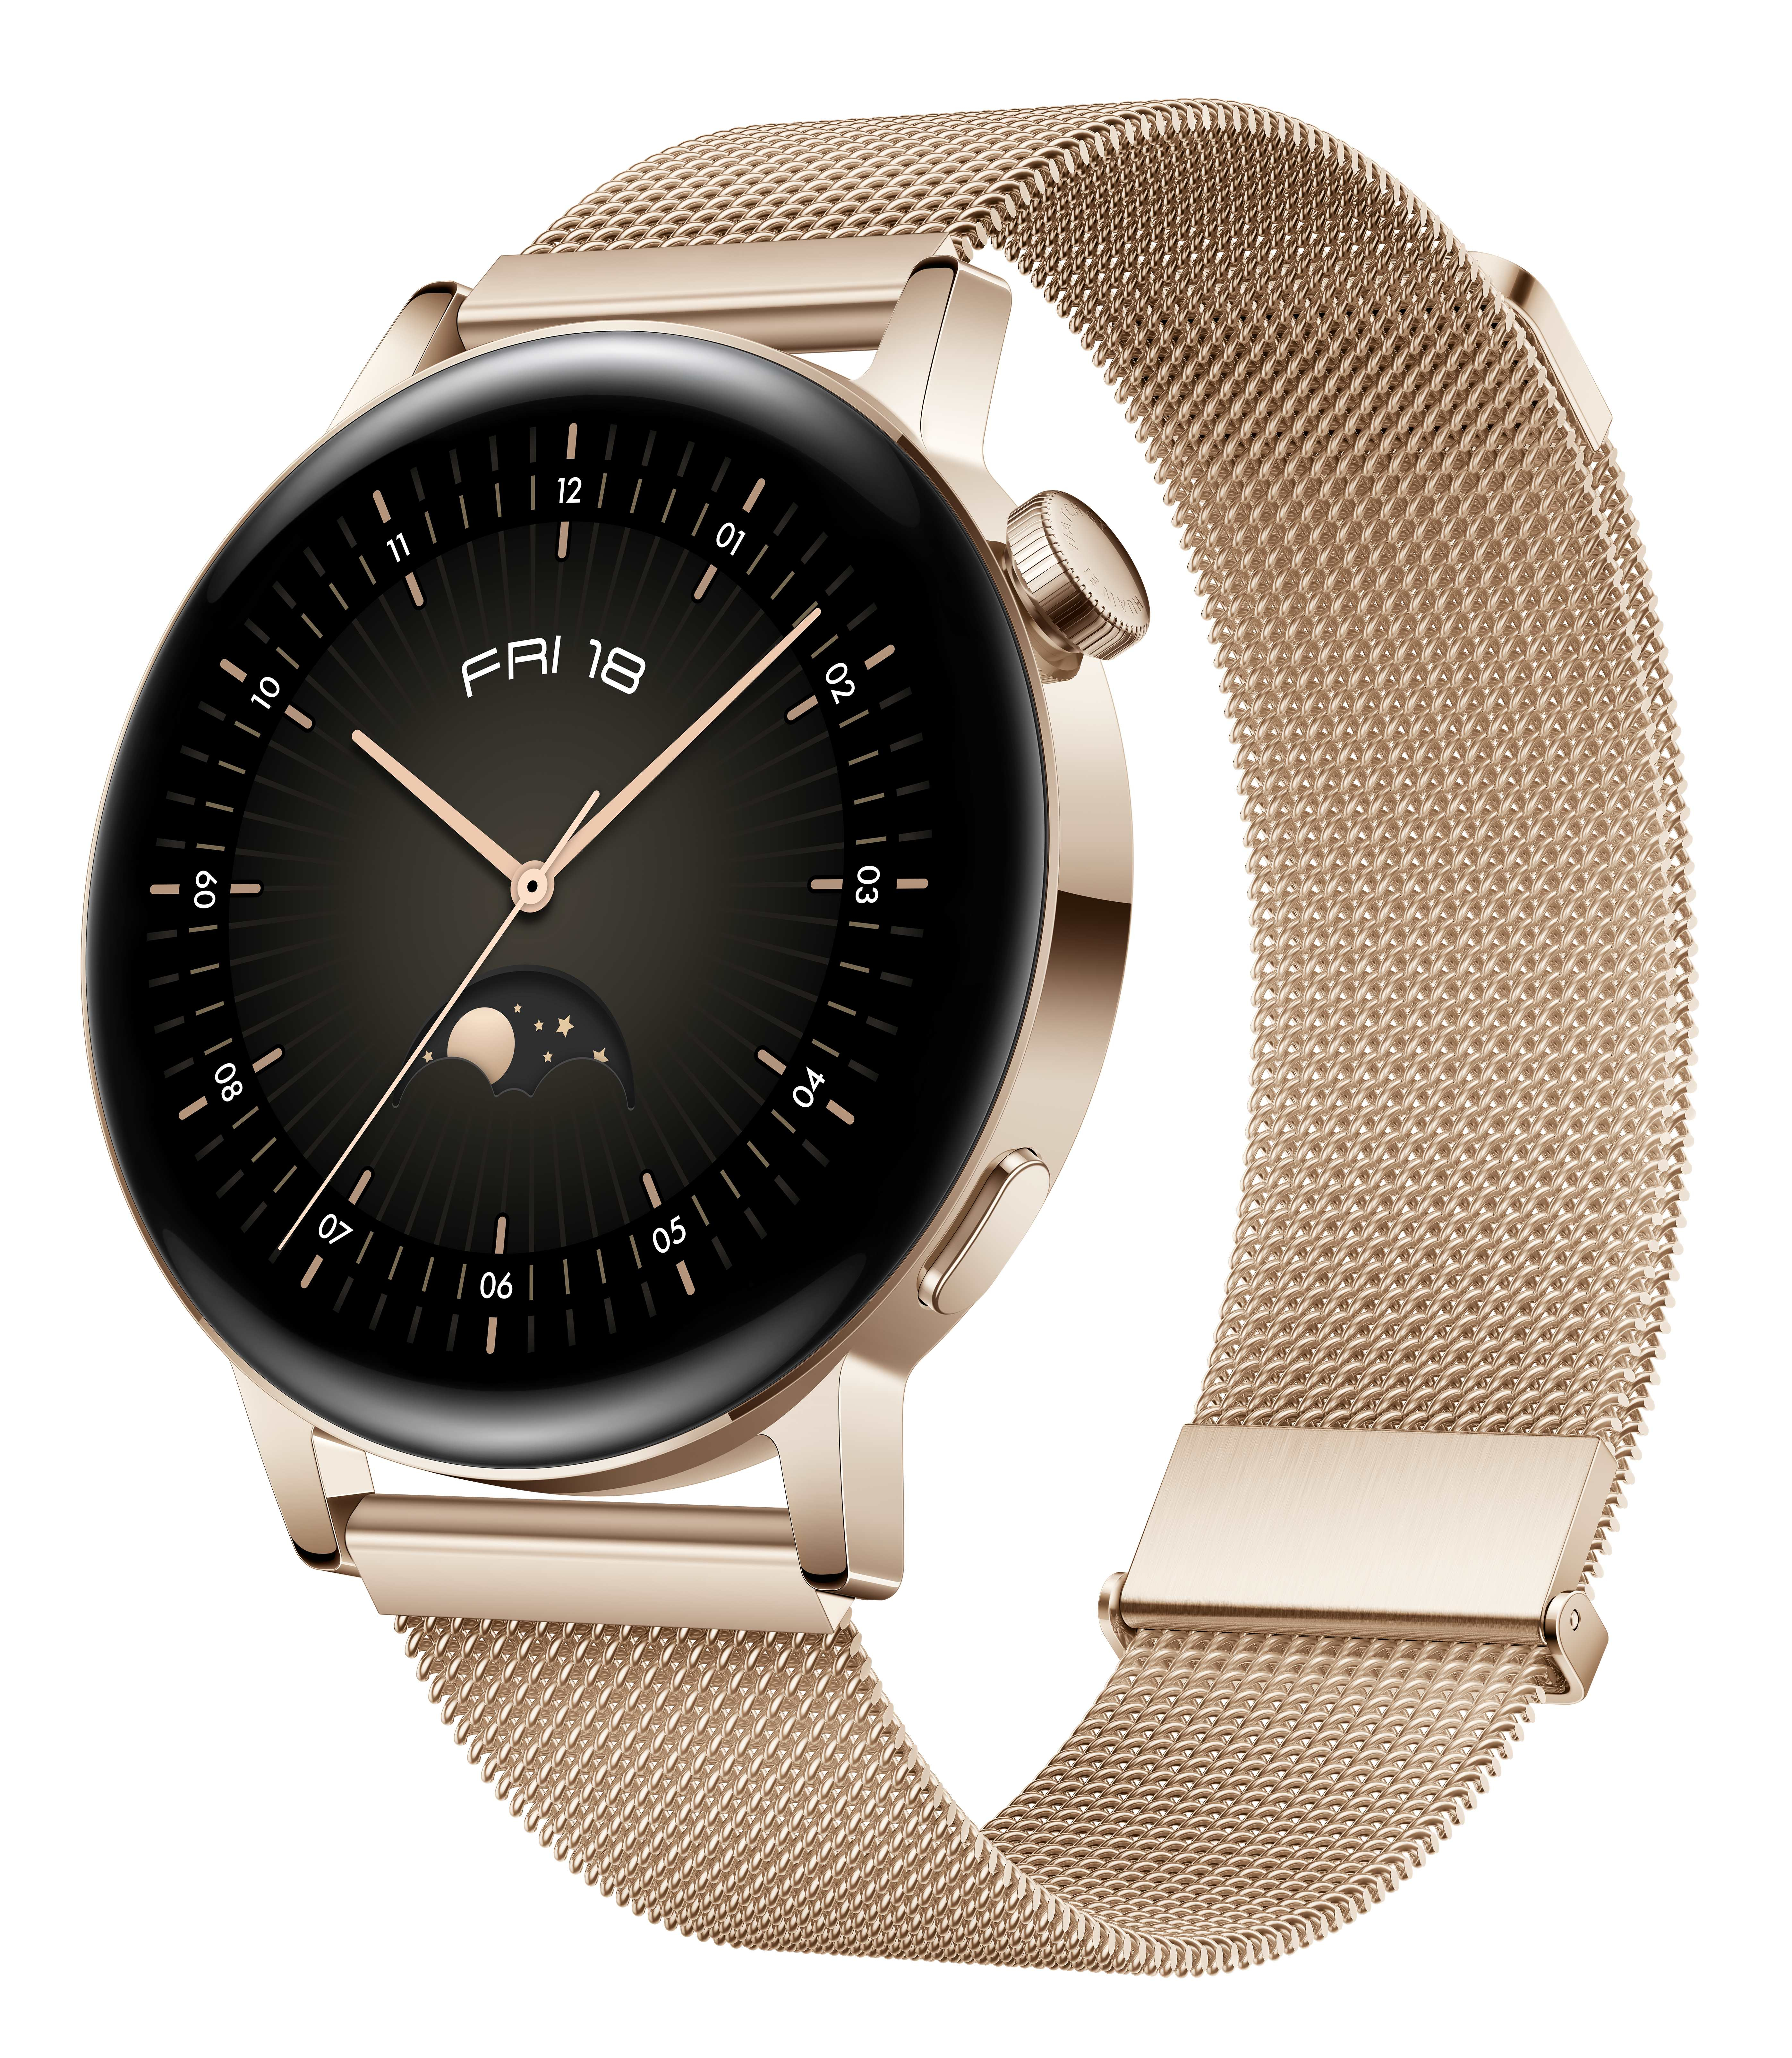 Smartwatch Huawei WATCH GT 3 3,35 cm (1.32